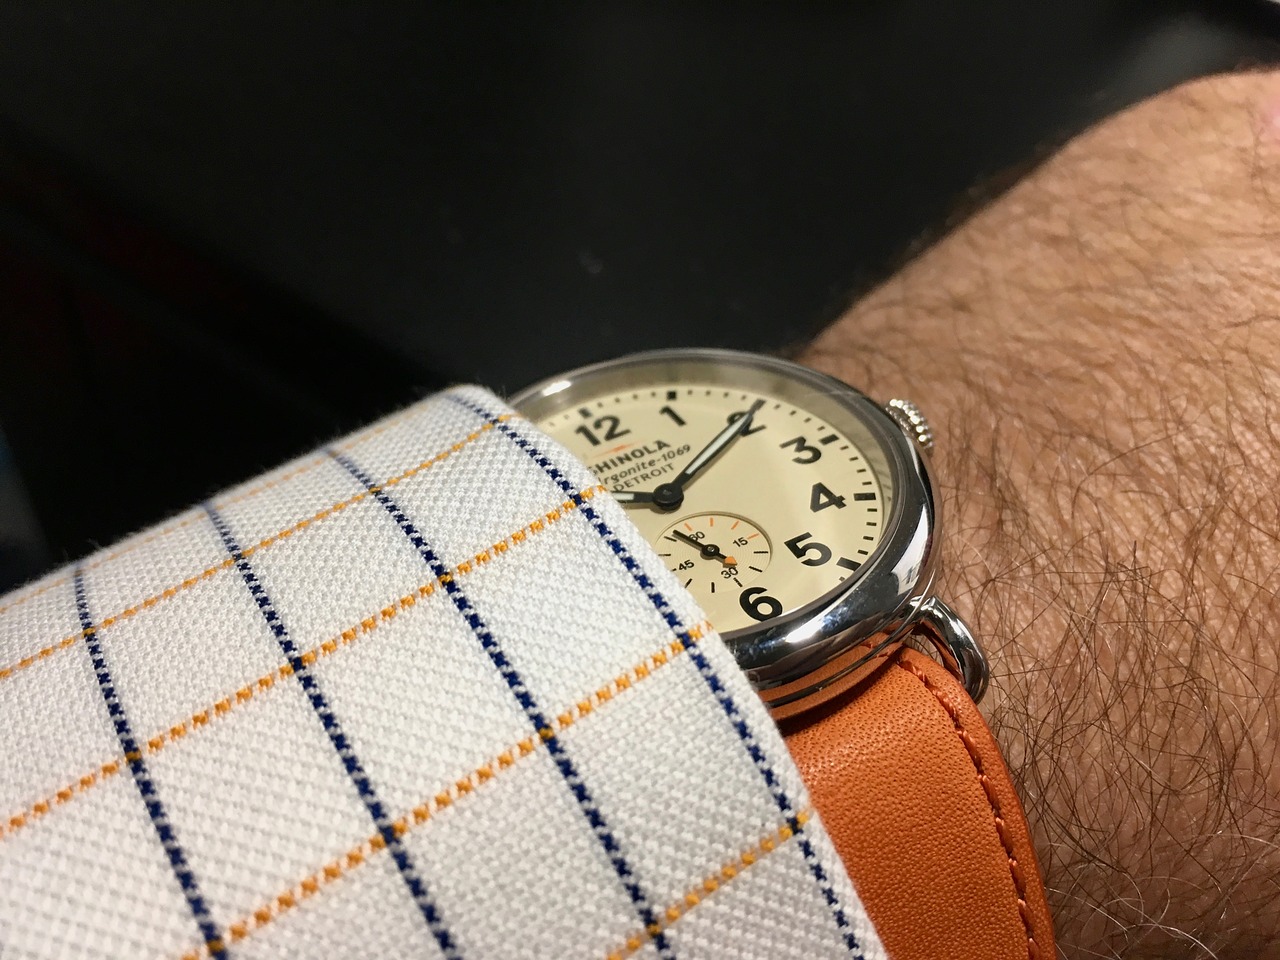 Luxury Watch, Analogue Watch, Wristwatch, Fashionable Watch, Stylish Watch, Orange Watch Strap